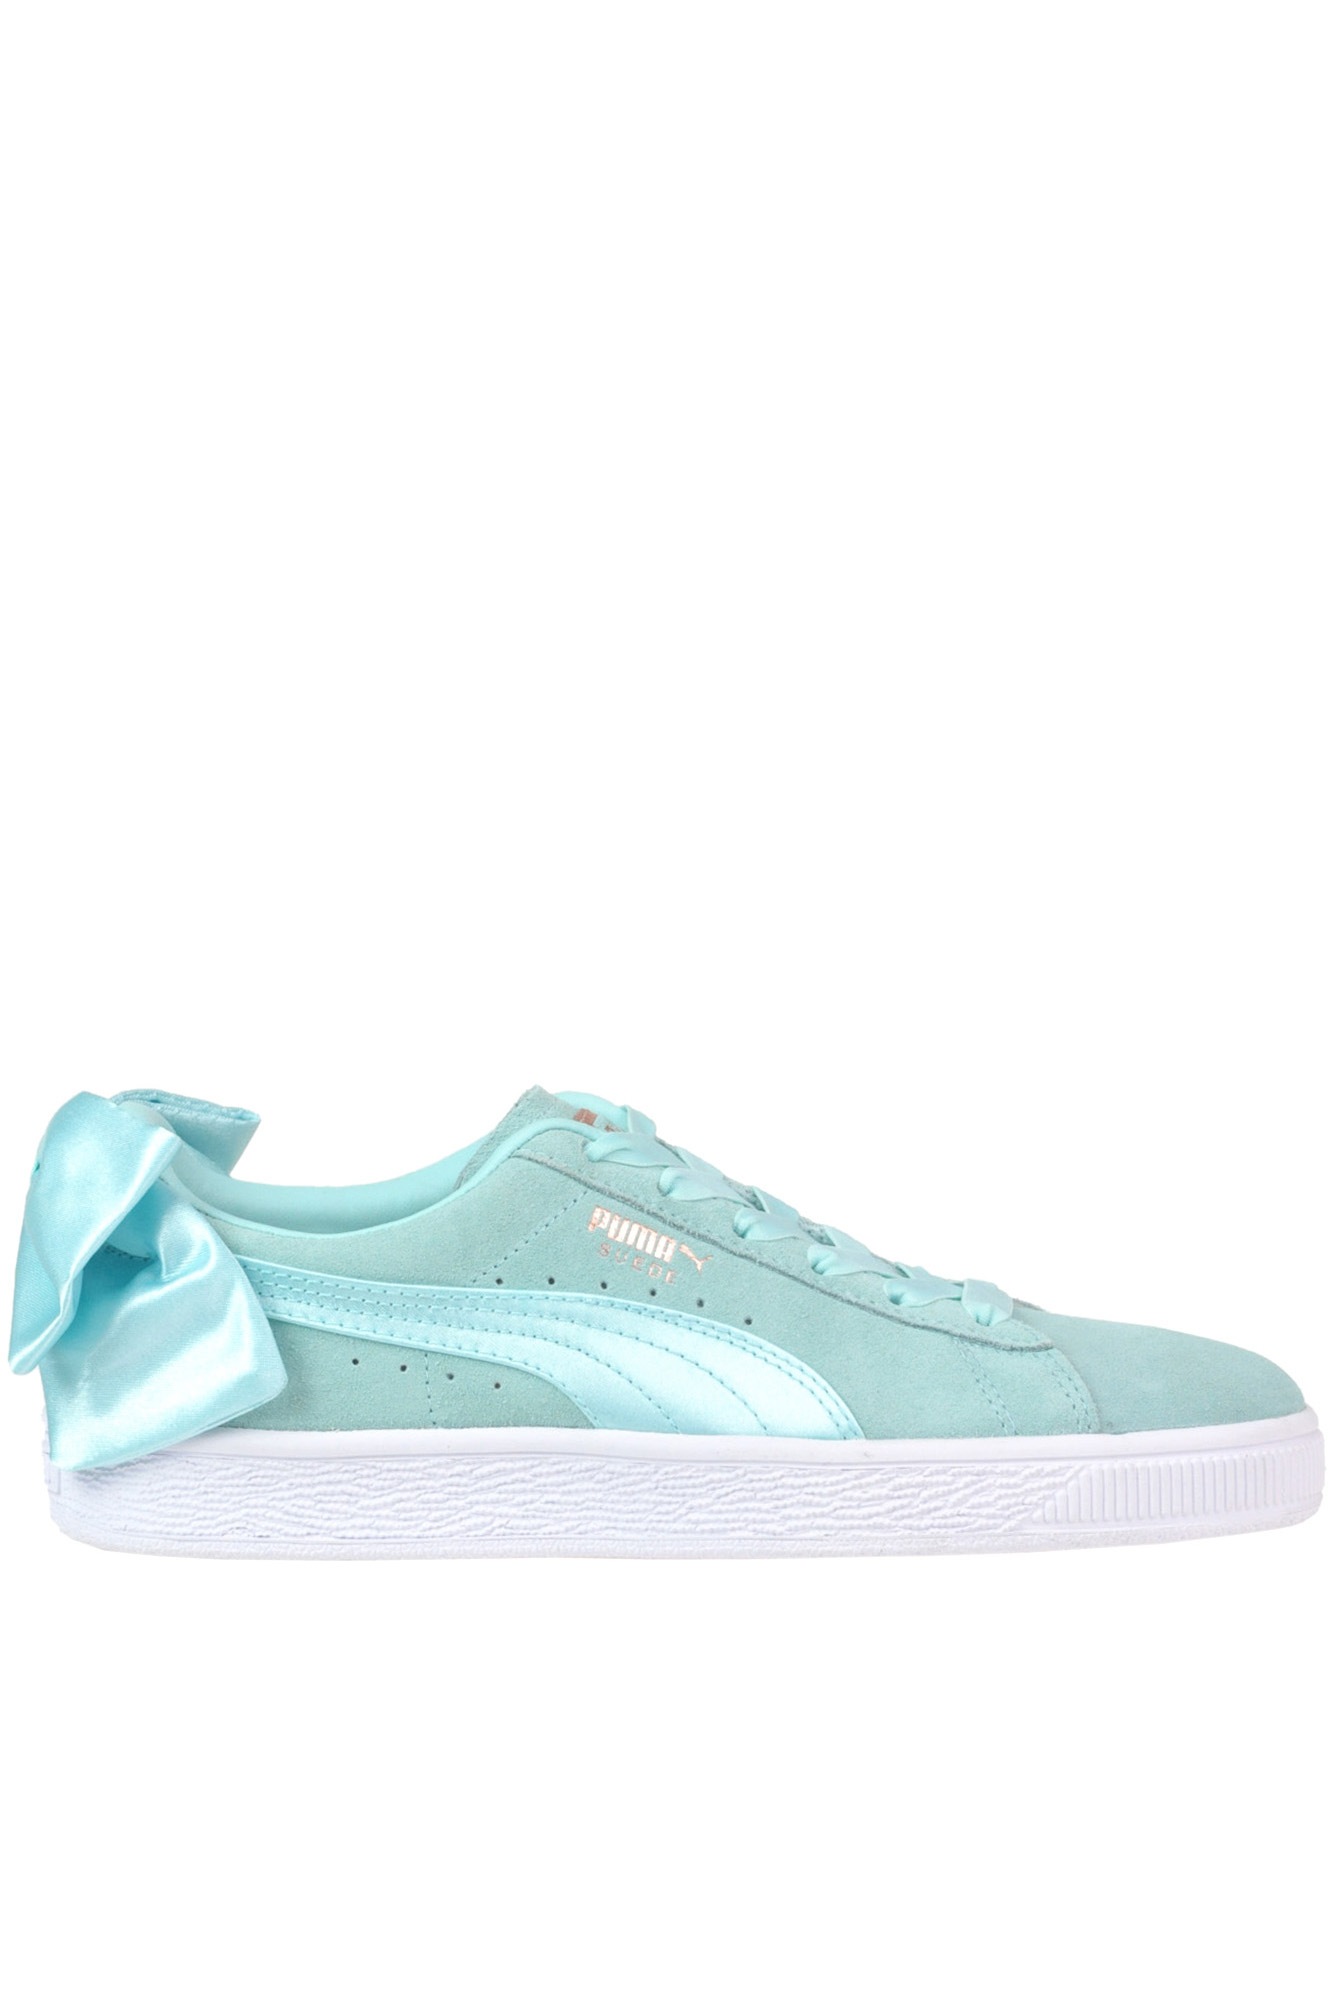 light blue puma shoes